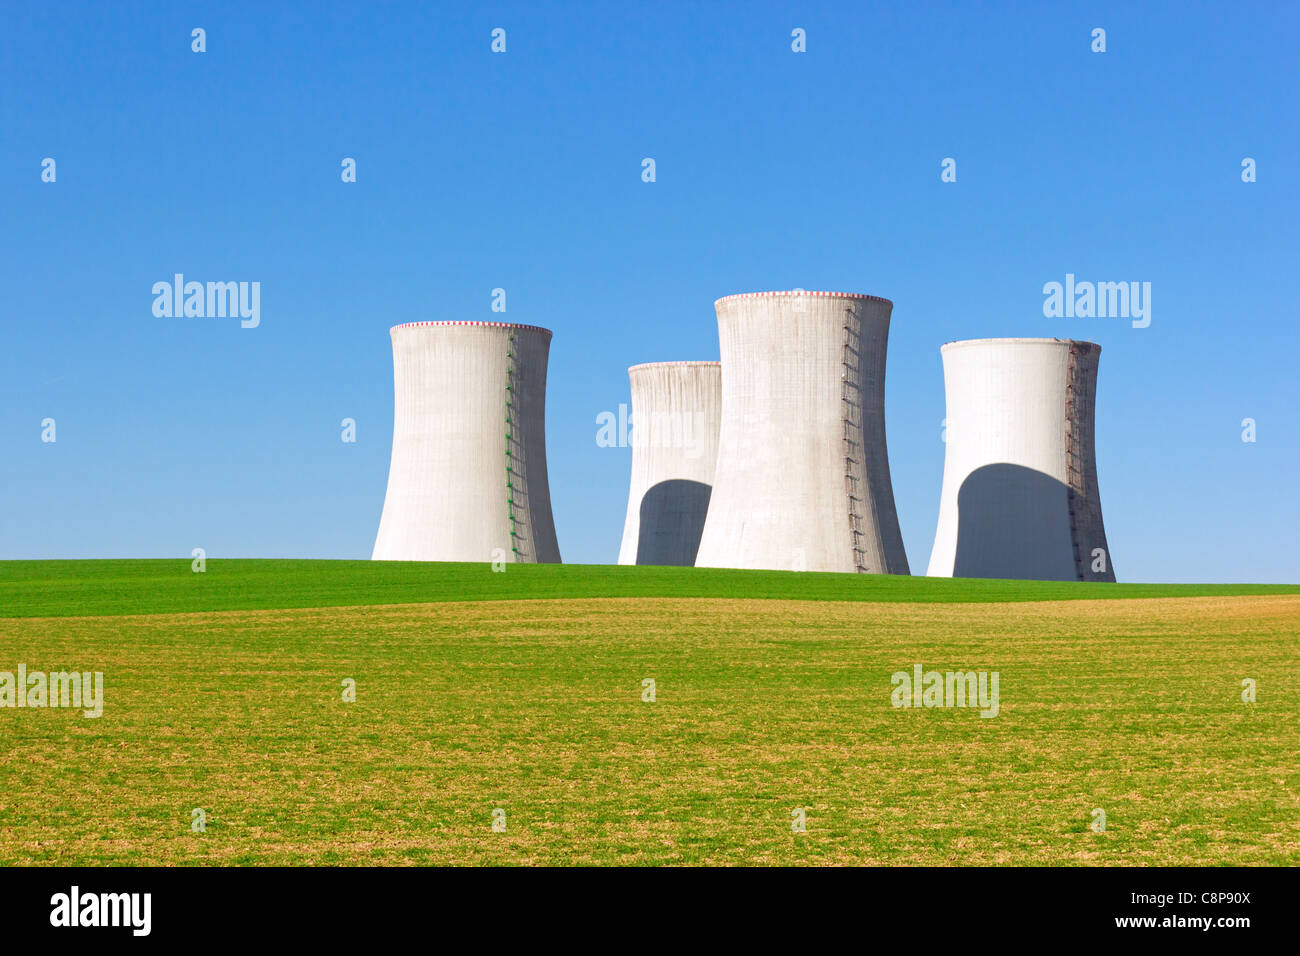 Tours de refroidissement de géant nuclear power plant Banque D'Images